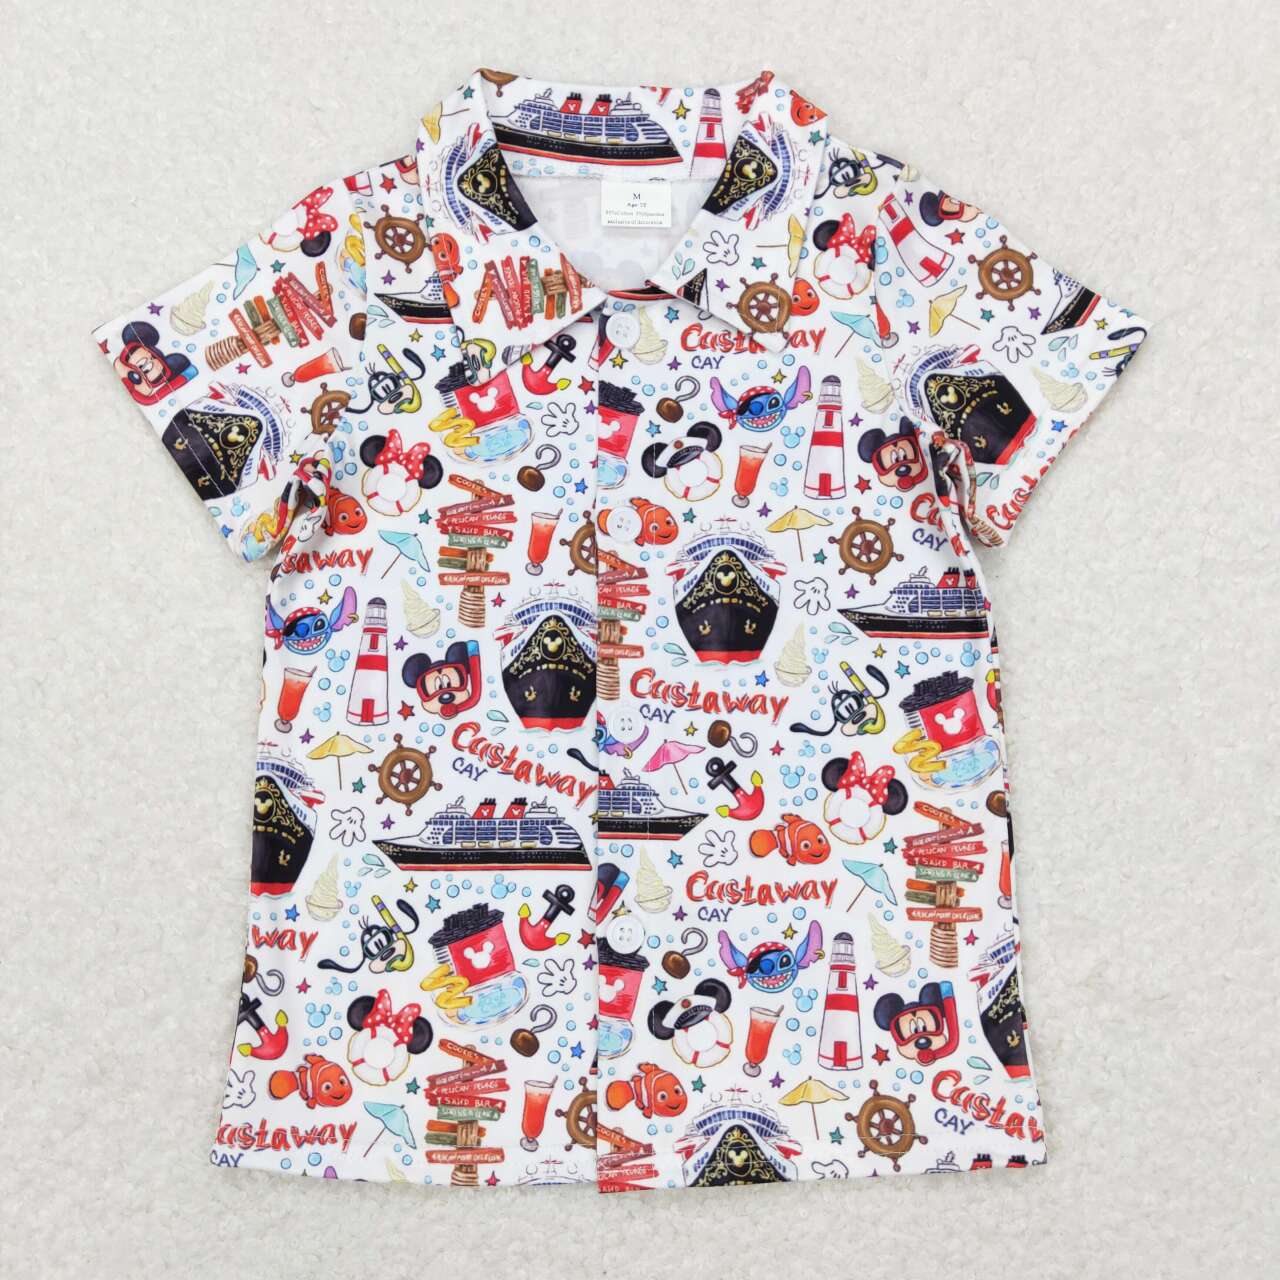 BT0490 Cartoon Figure Print Boys Buttons Tee Shirts Top